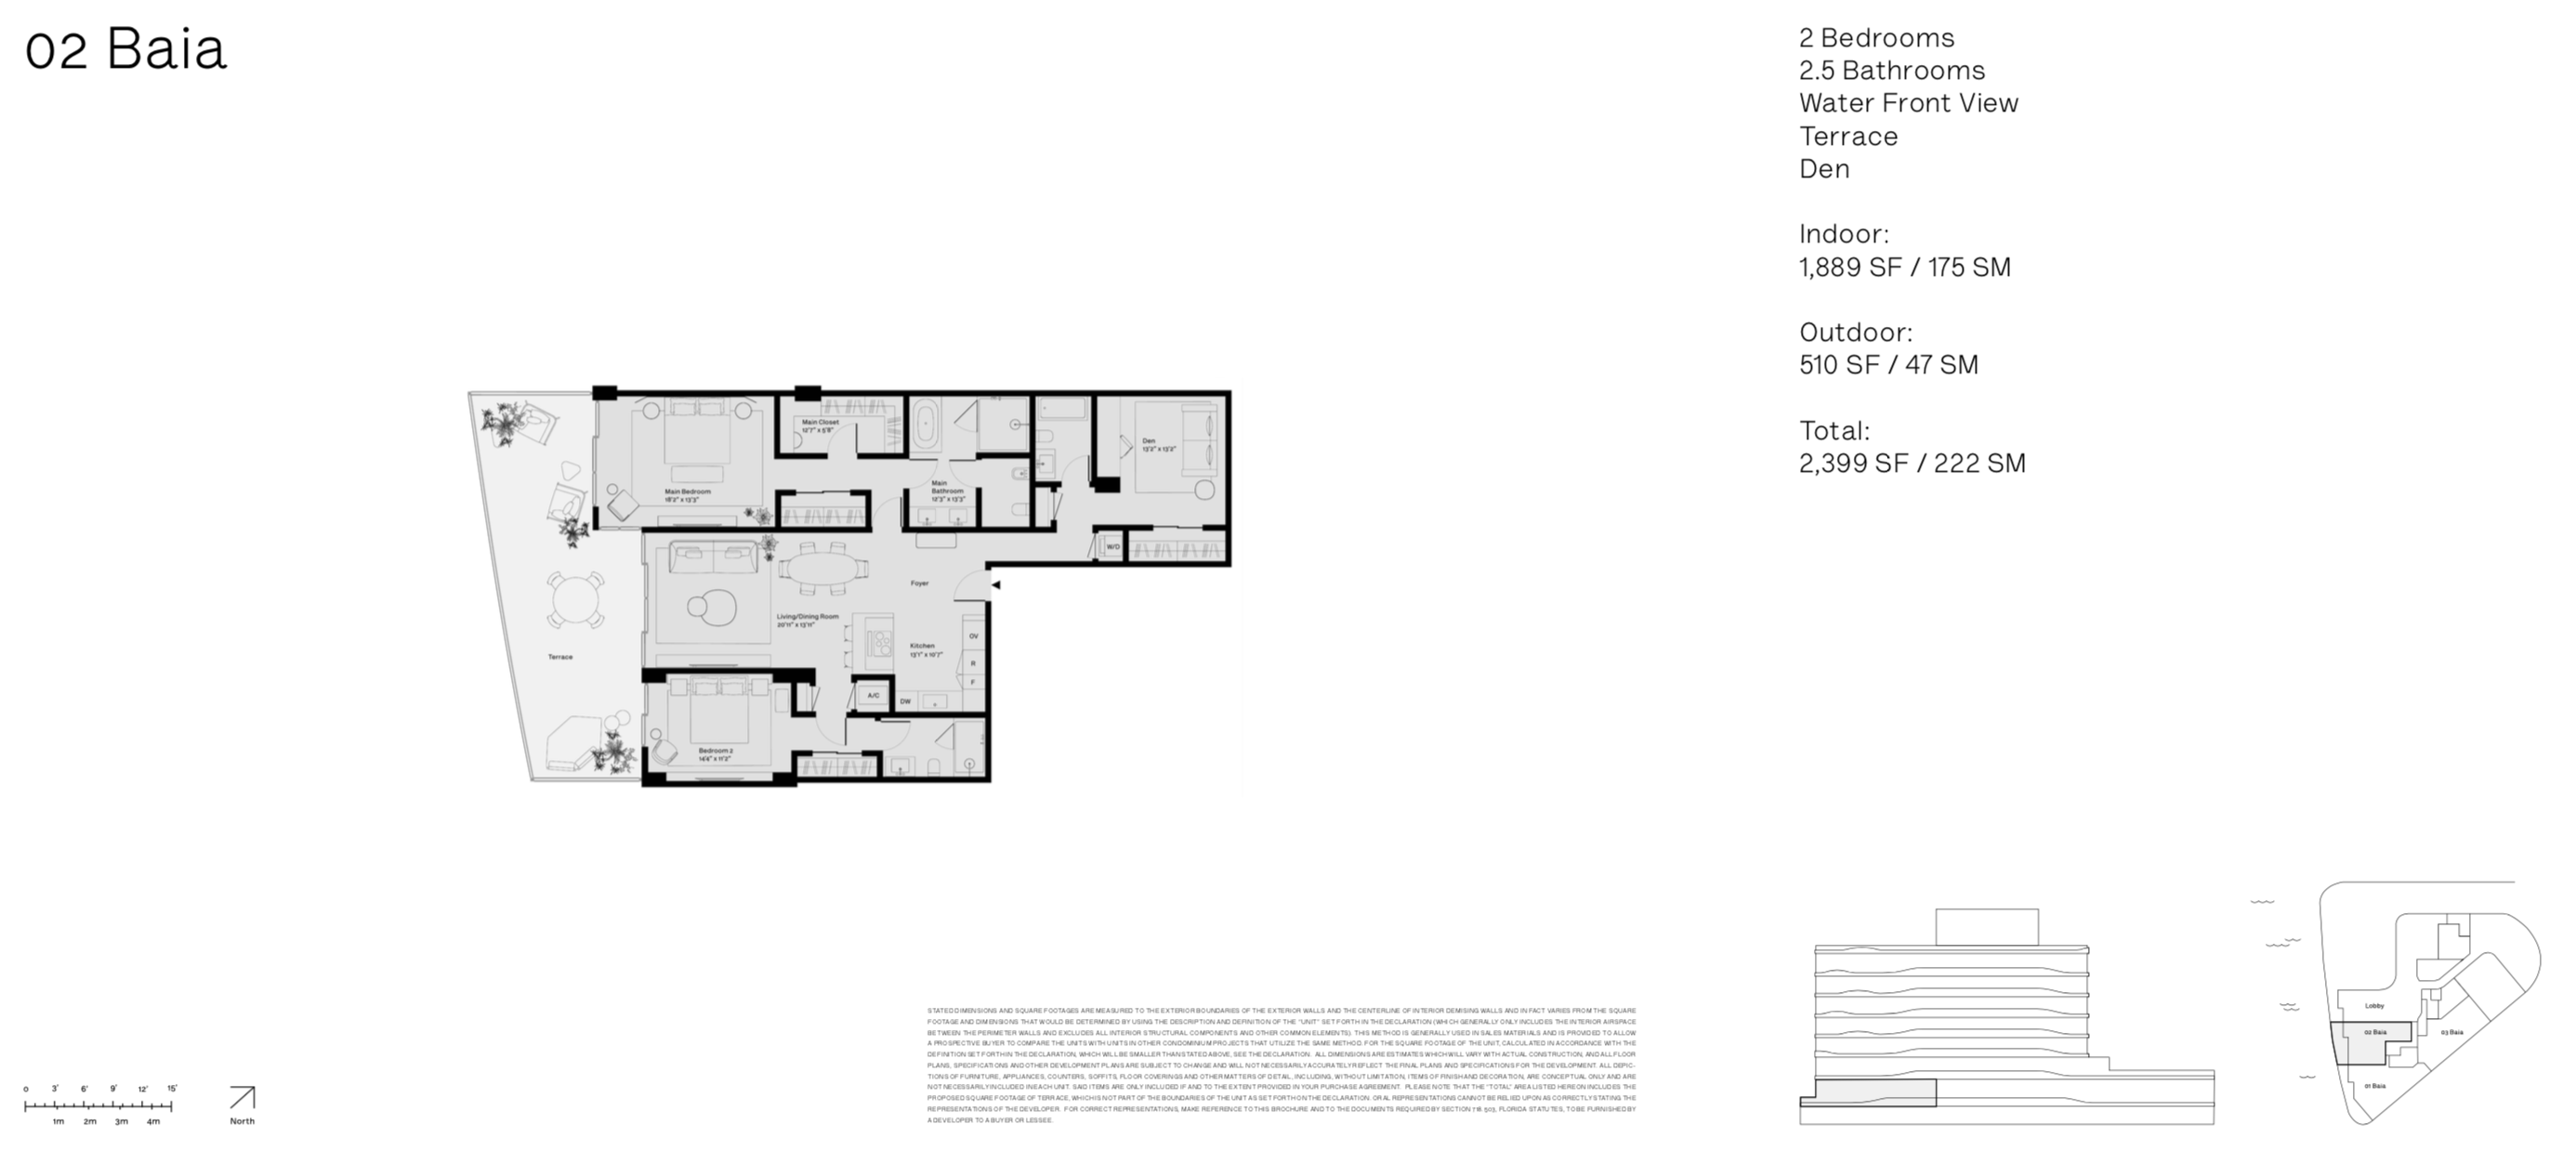 Onda Residences | Baia 02 Line |  Floor 2 | 2 Be + Den | 2.5 Ba | Waterviews | 1,889 SF 